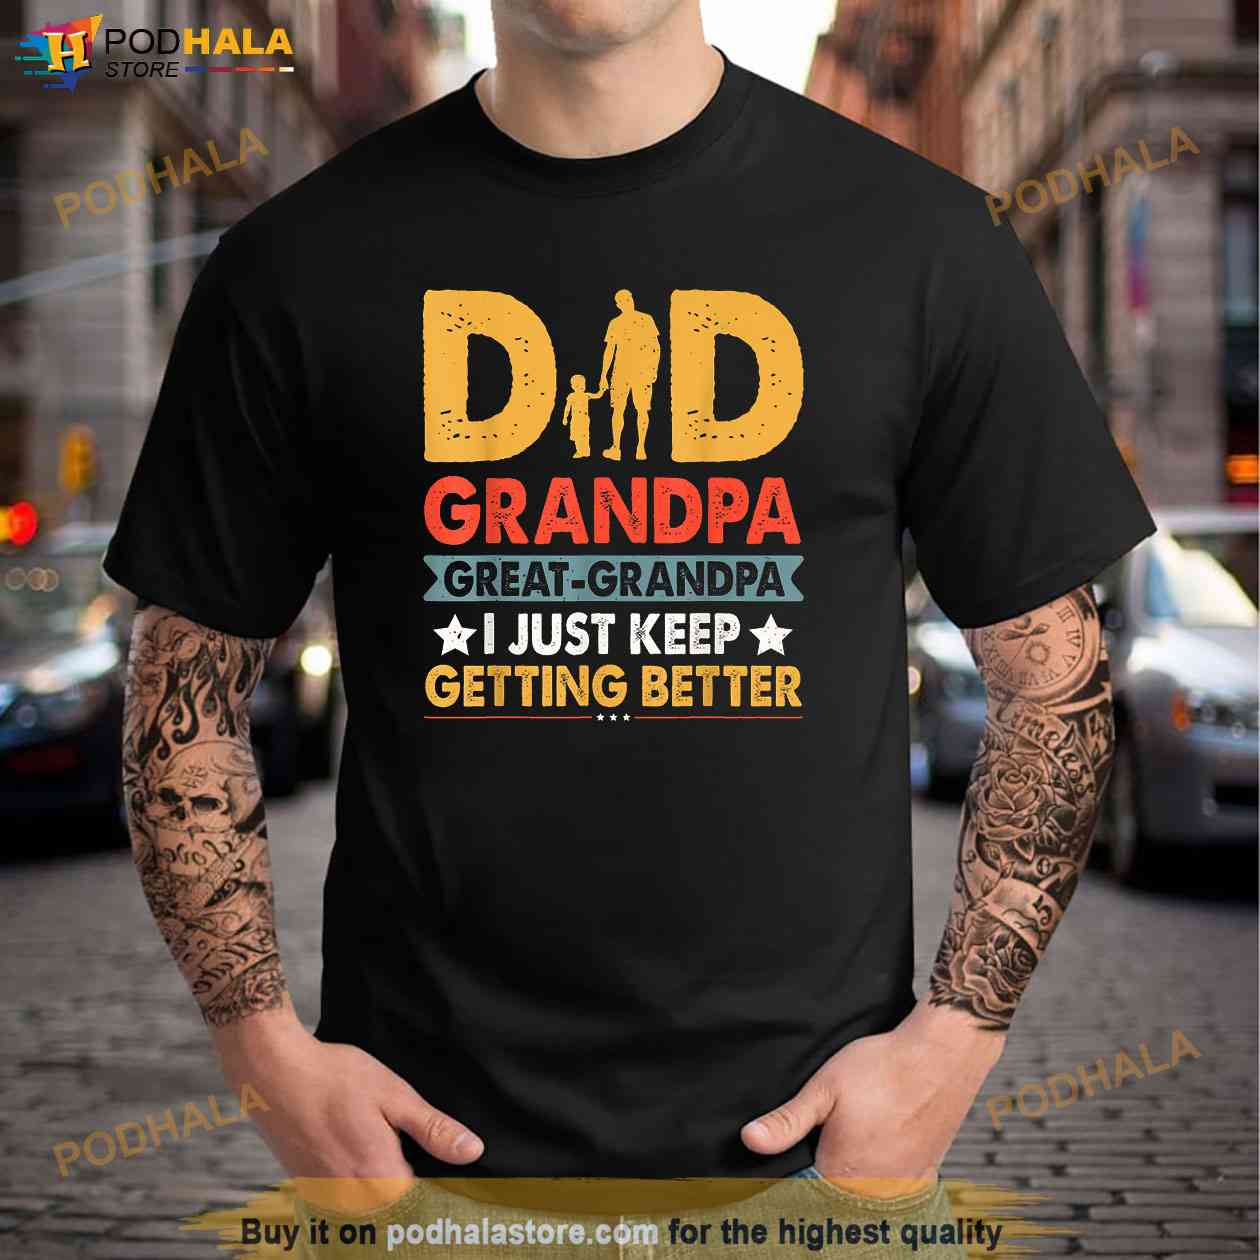 new york yankees grandpa shirt